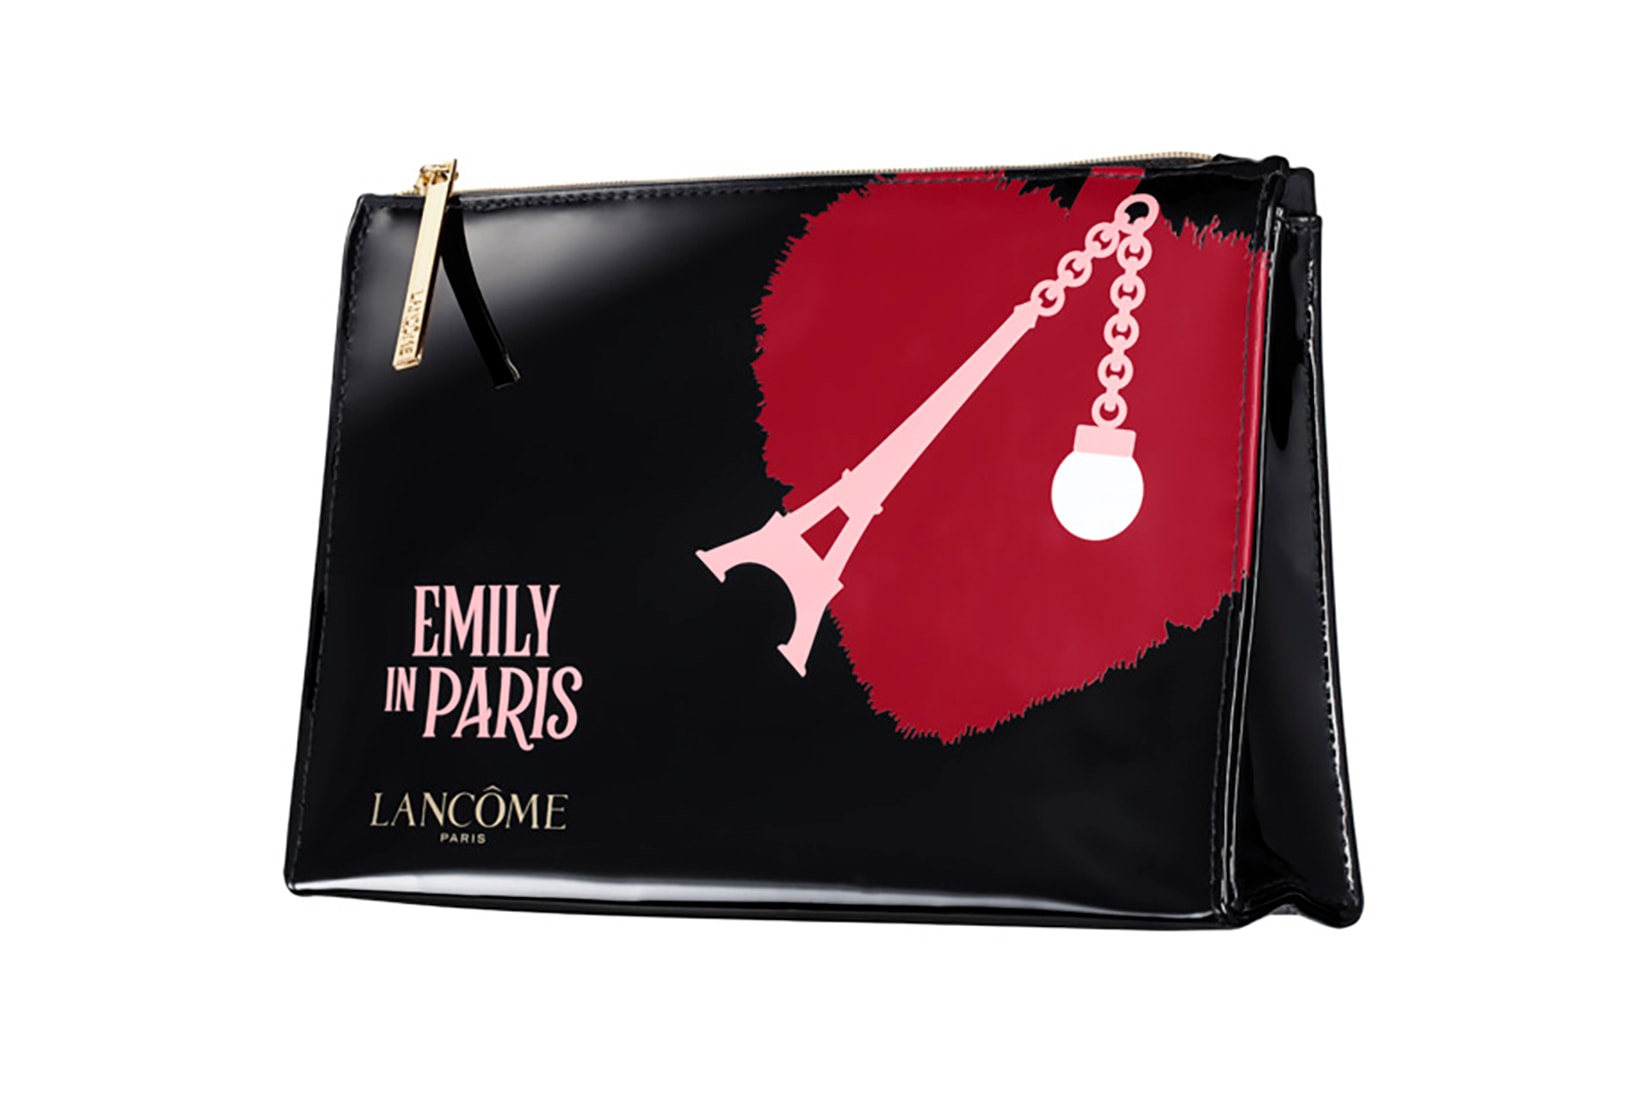 Emily in Paris Lancôme Lily Collins Netflix TV Show Pouch